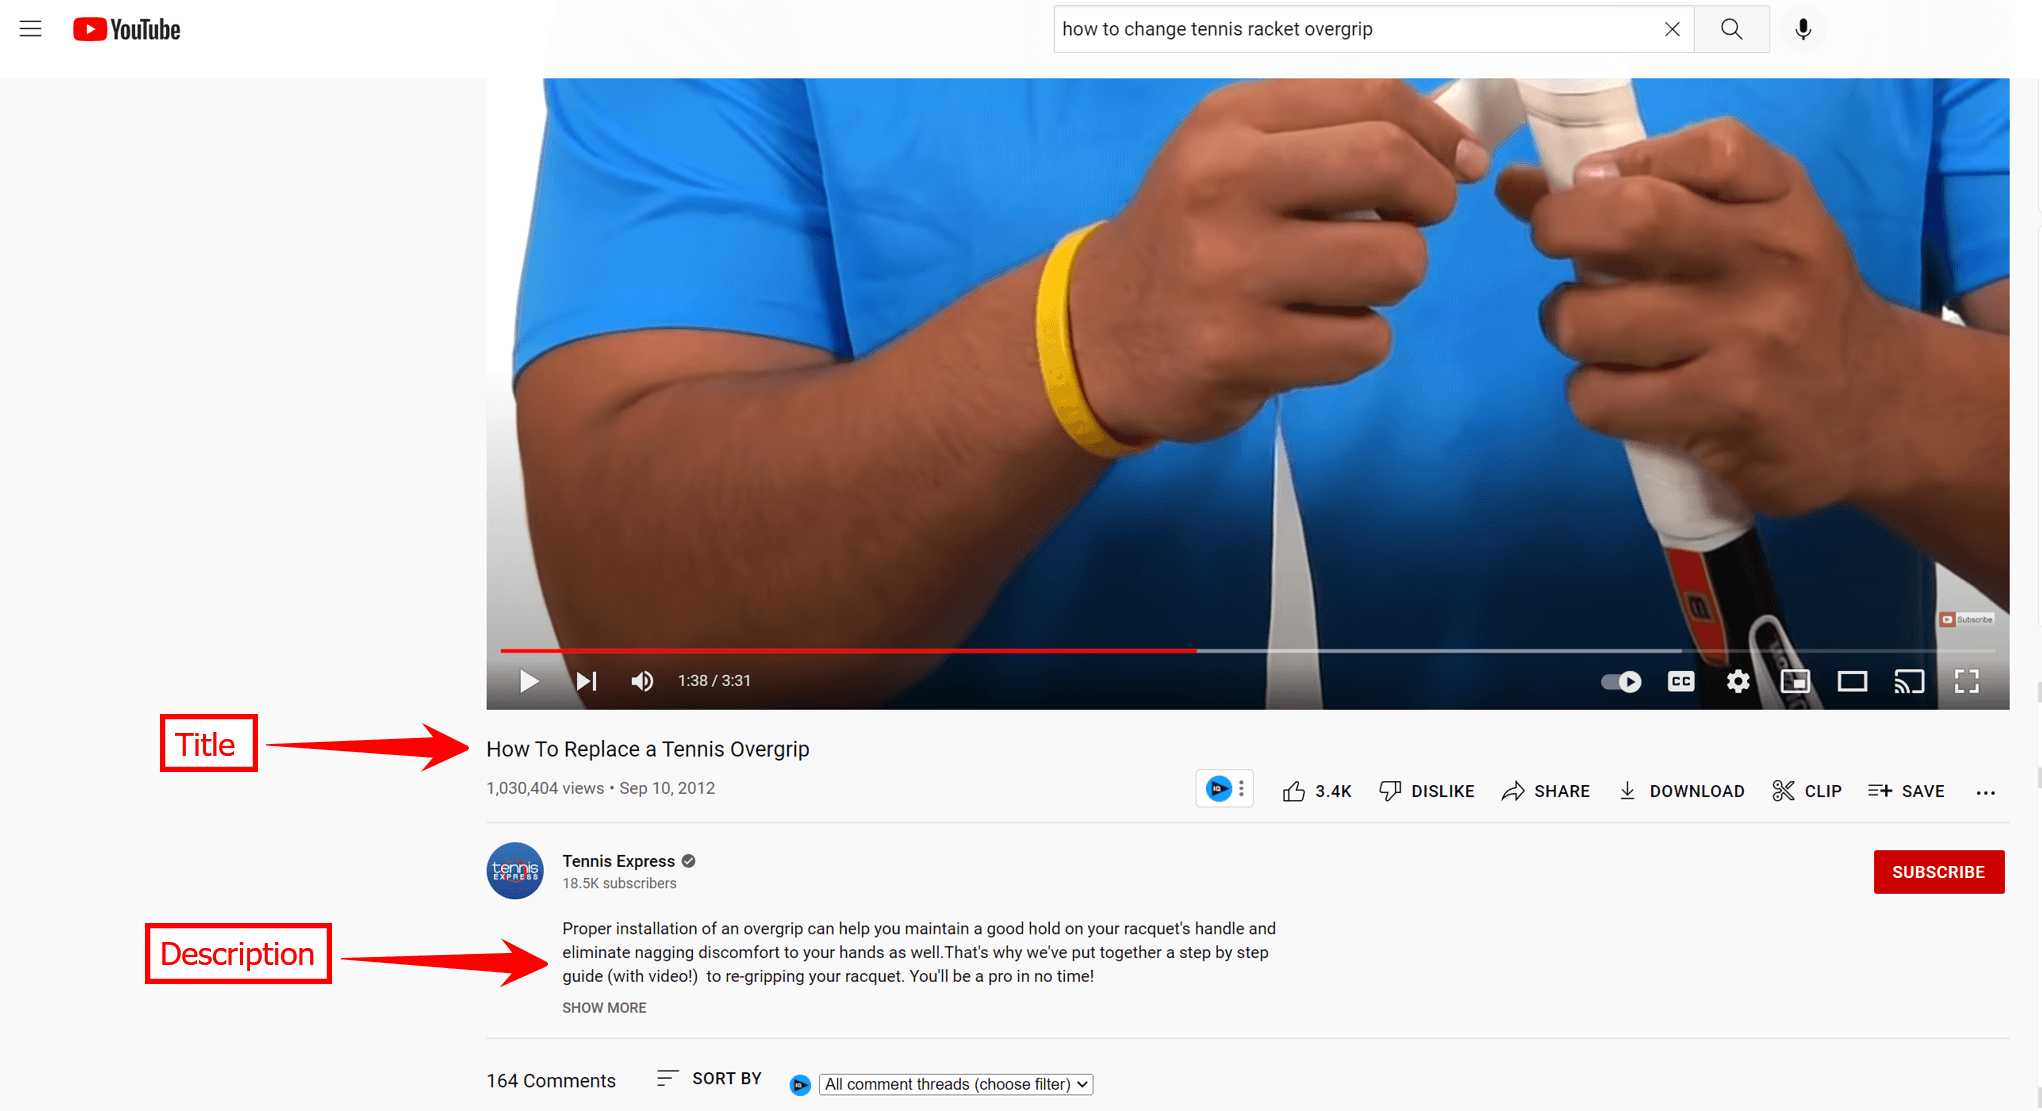 YouTube上一个关于过度握拍网球拍的视频的标题和描述